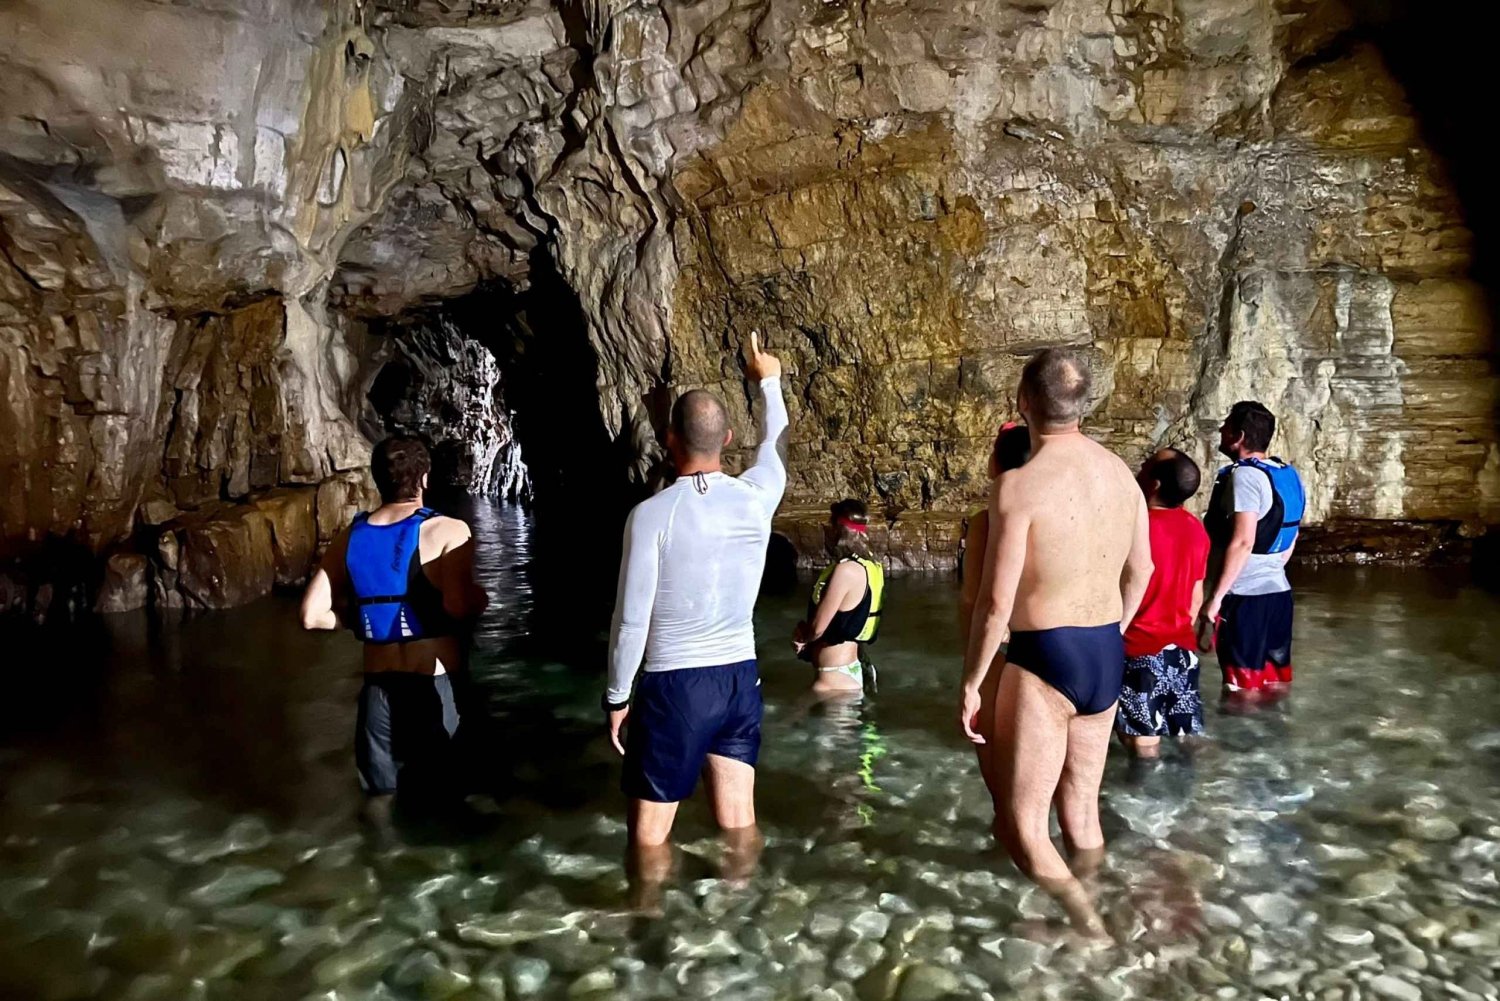 Pula: Kajaktur i den blå grotte med svømning og snorkling